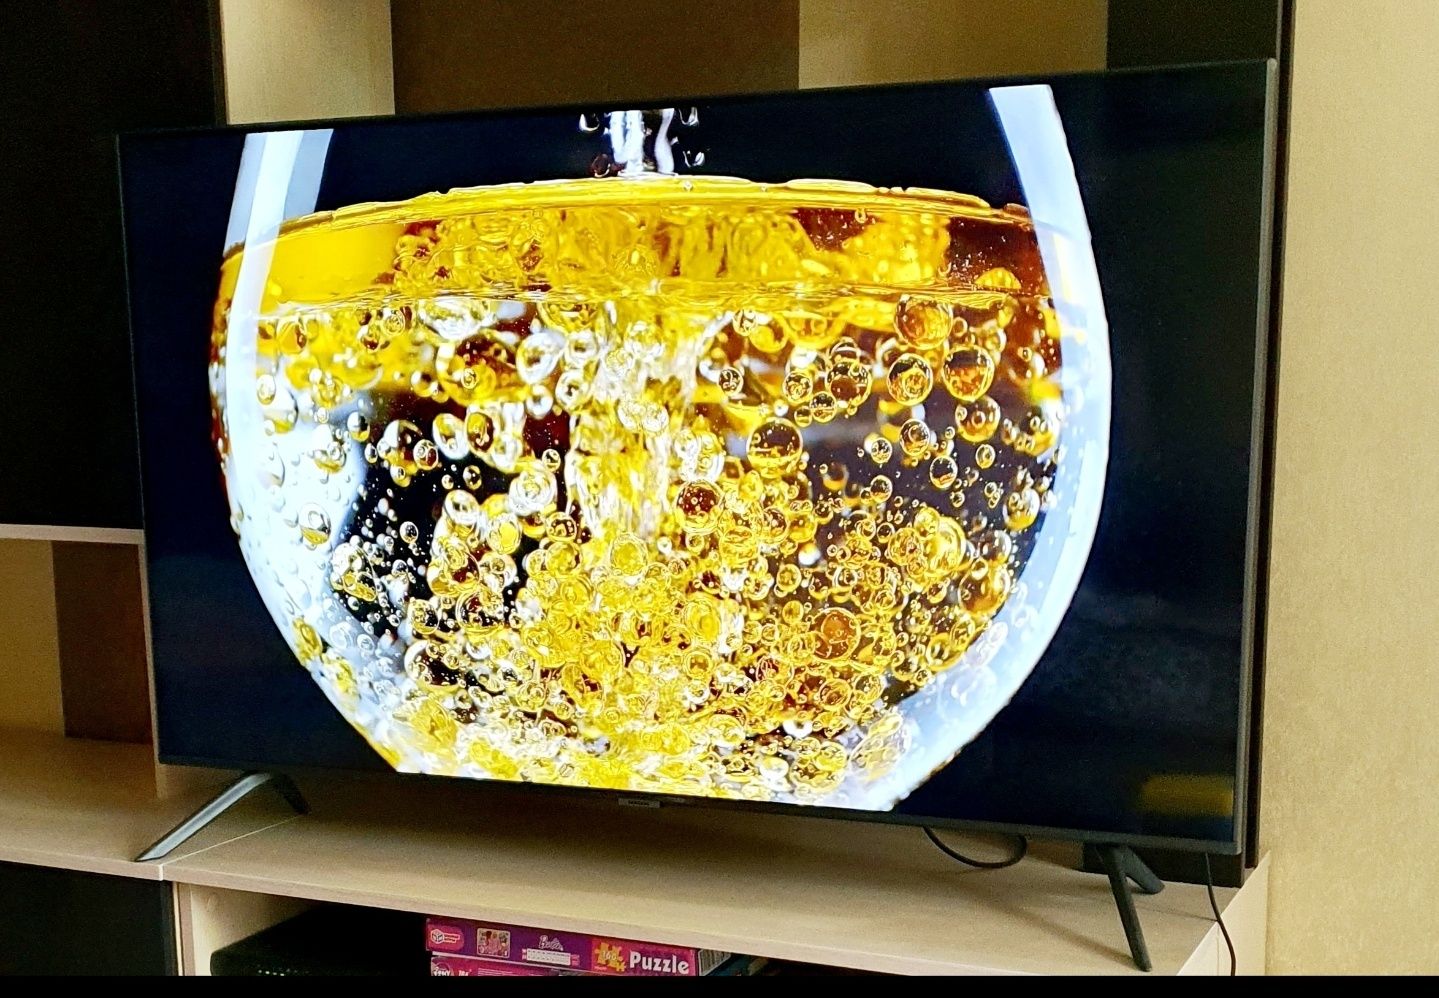 Шикарный 4К телевизор оригинал Samsung 130см